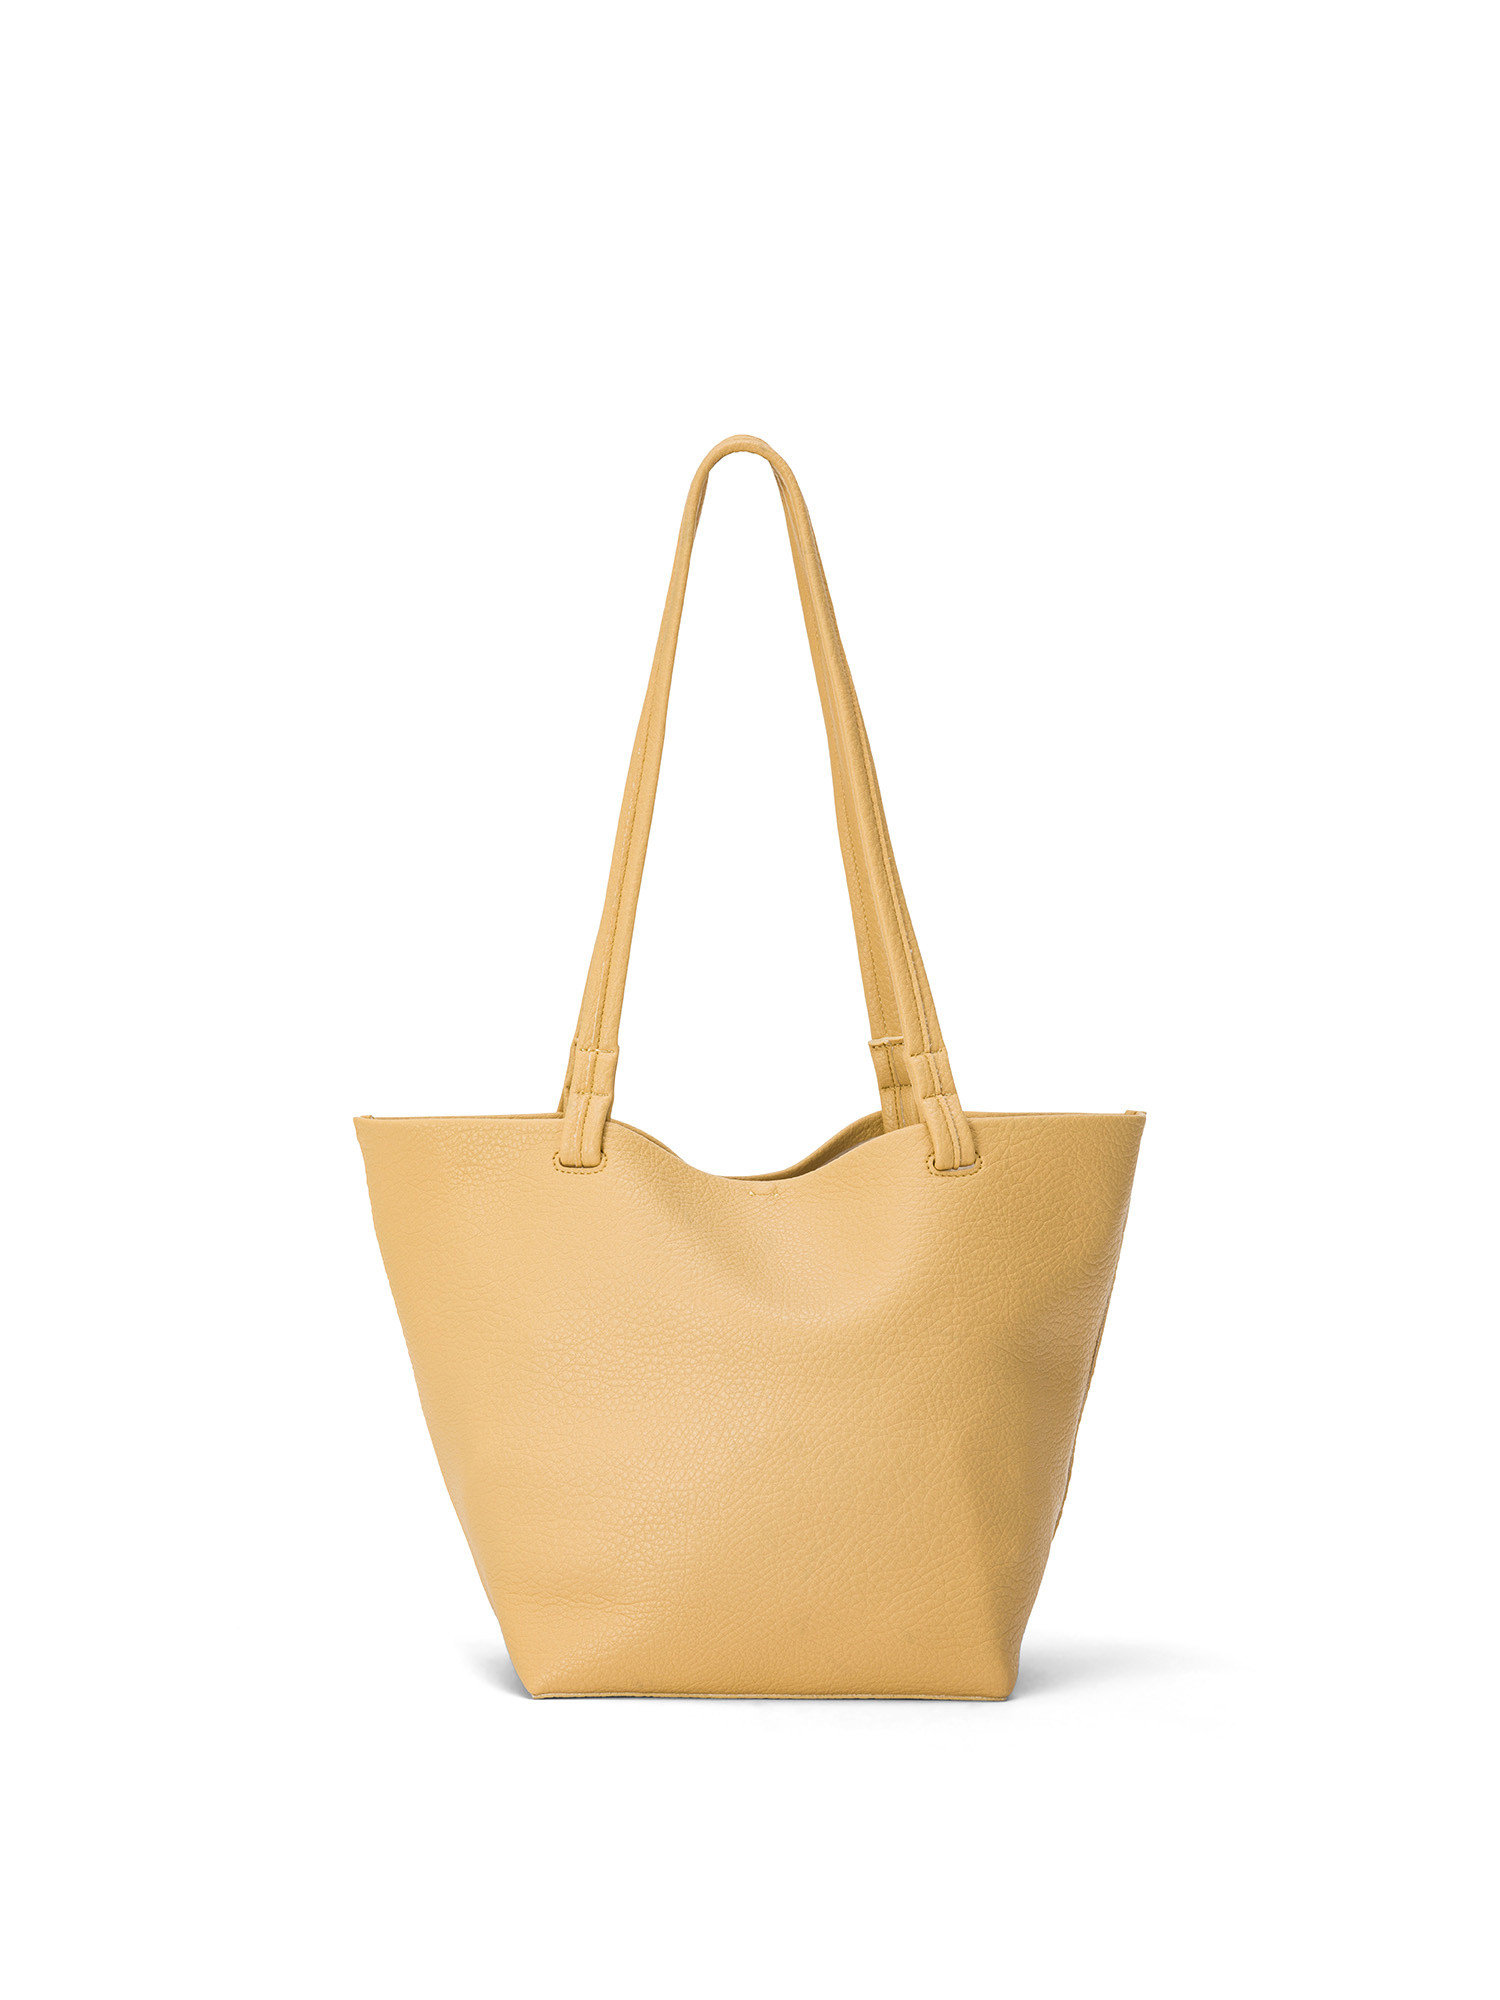 Koan - Shopping bag, Yellow, large image number 0